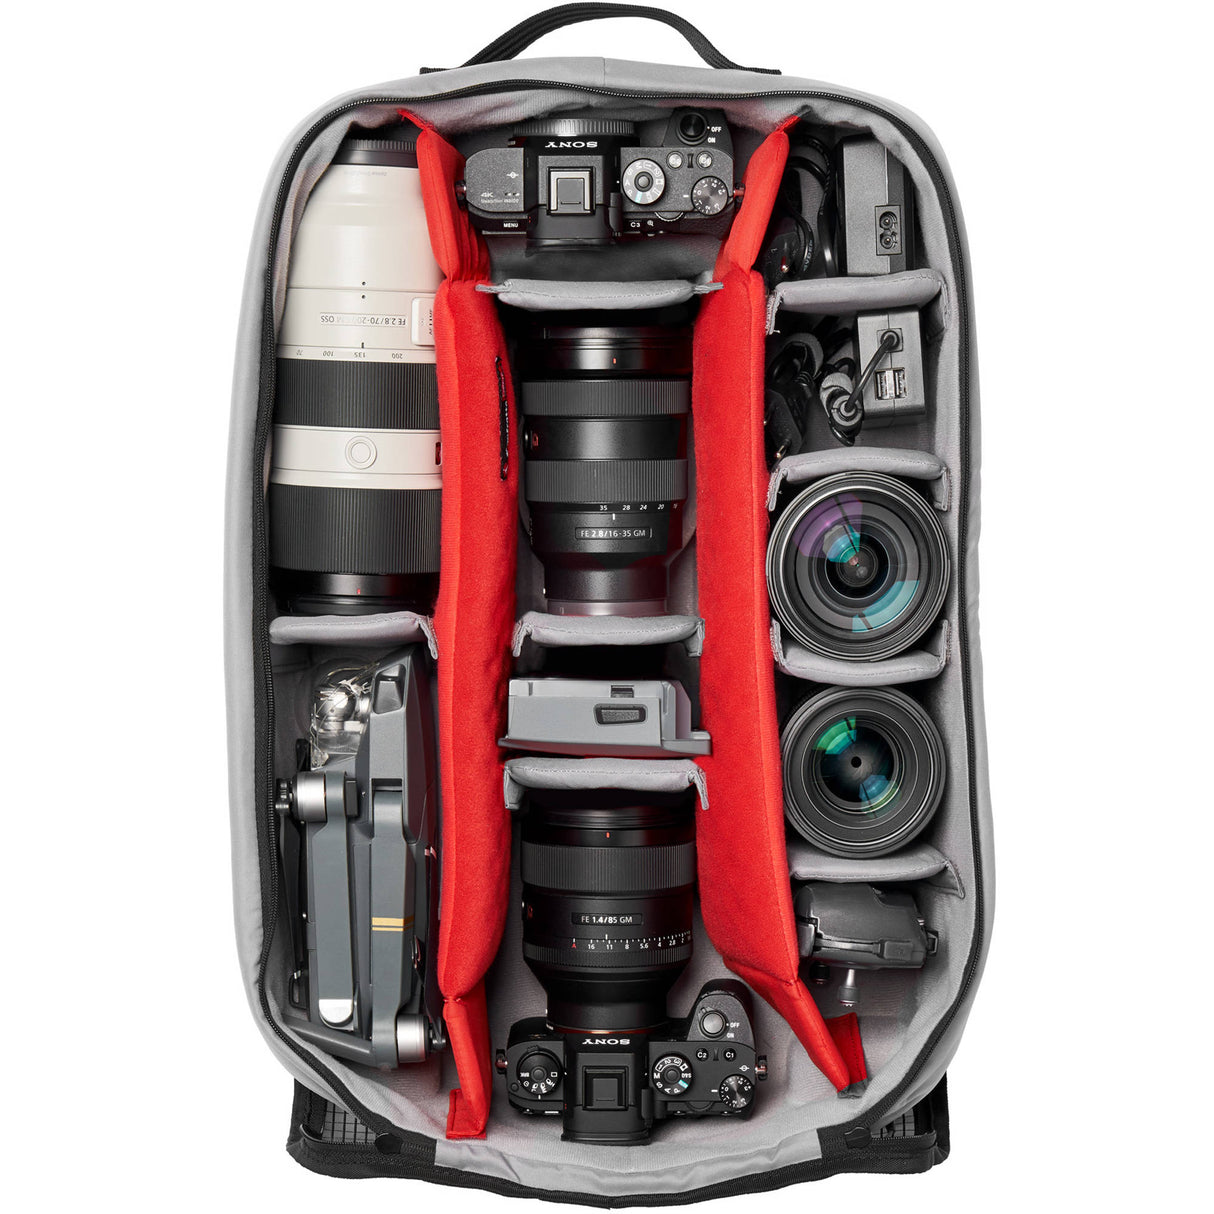 Manfrotto Pro Light Reloader Spin-55 Carry-On Camera Roller Bag (Black)